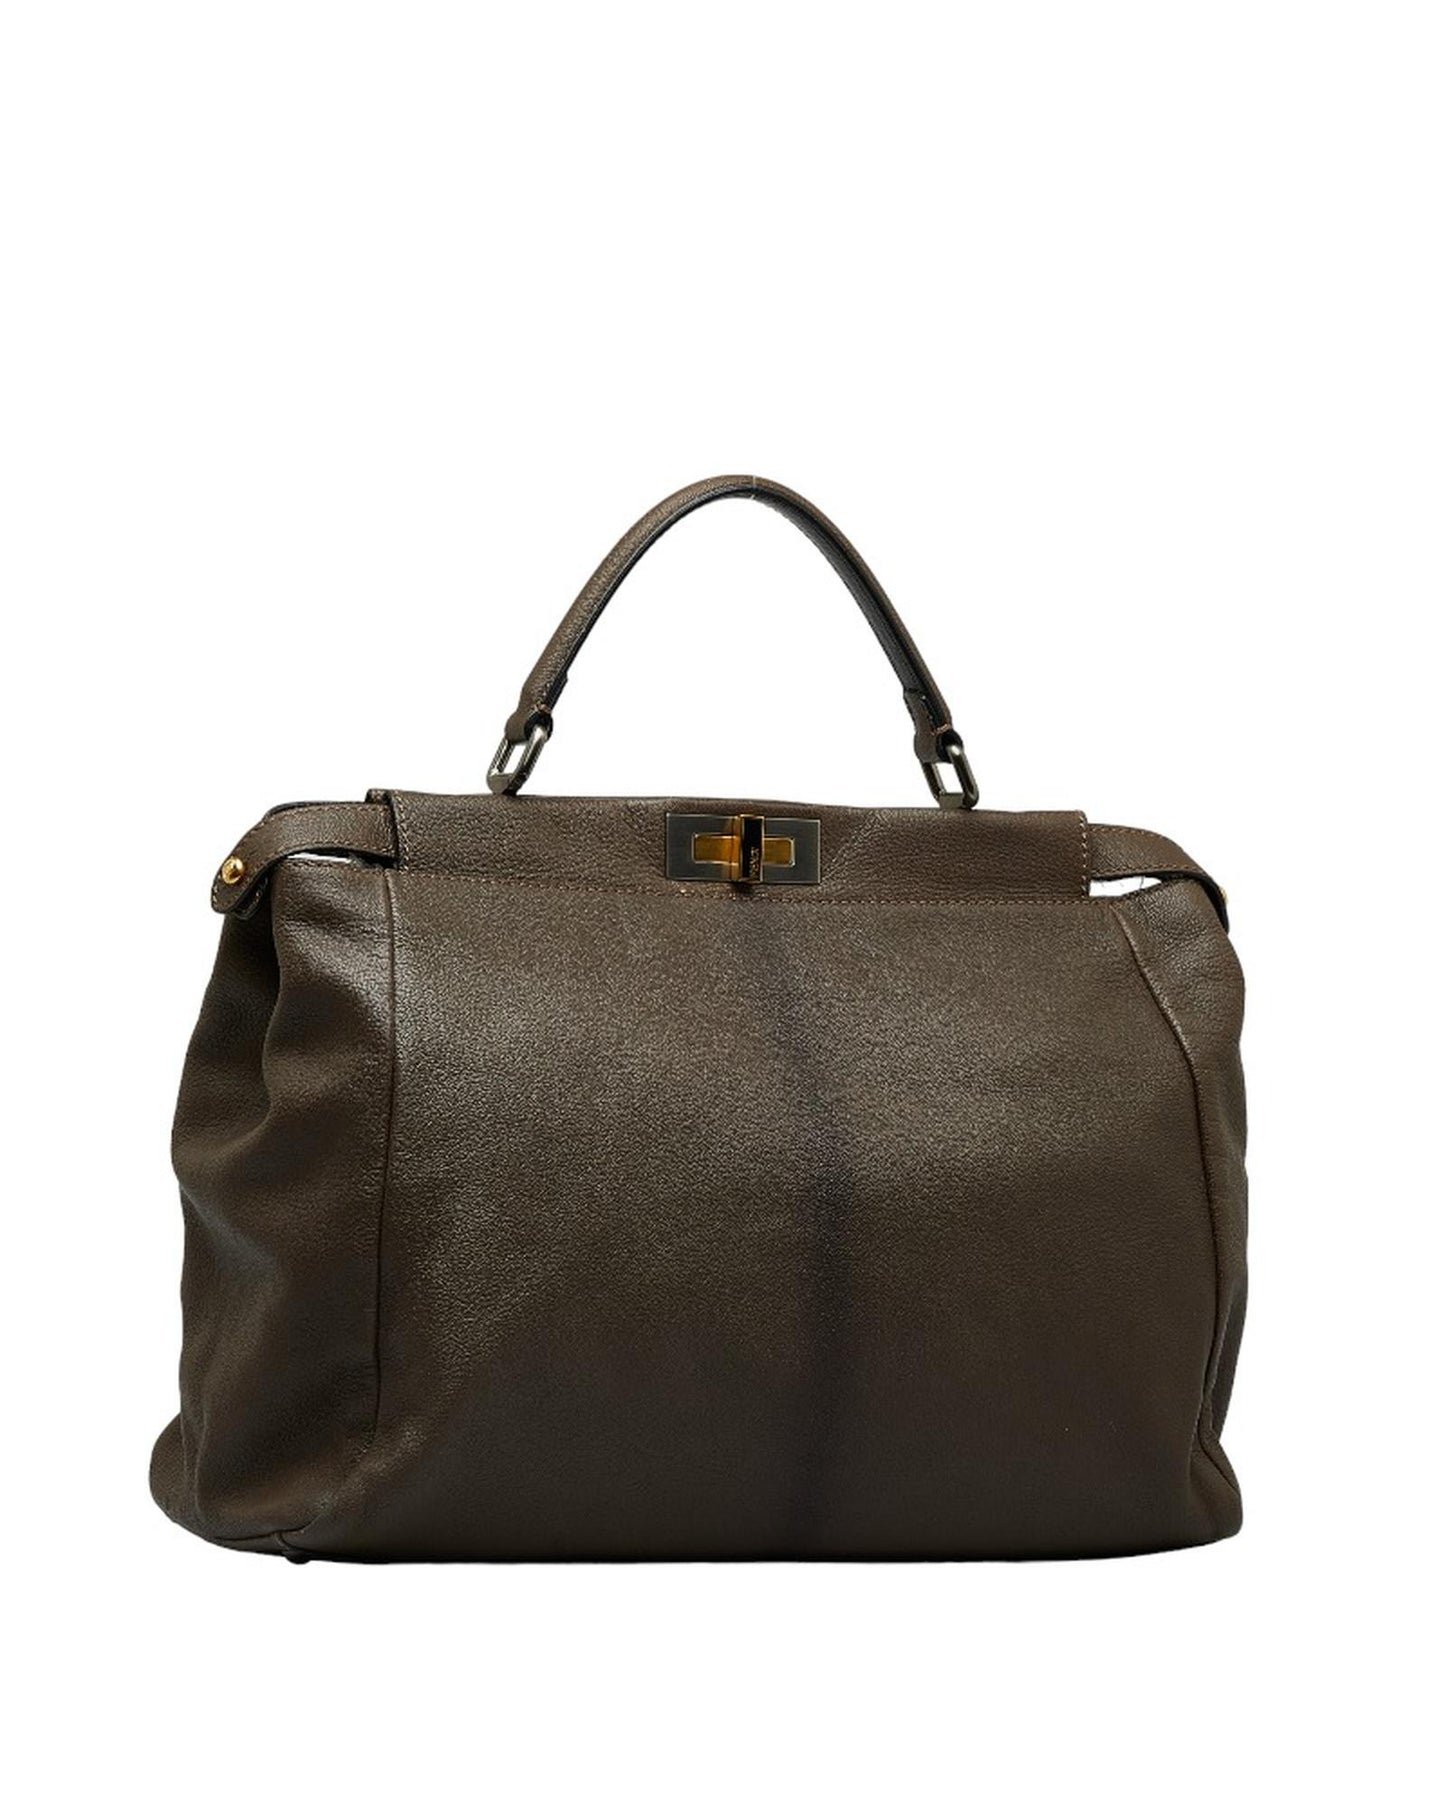 Fendi Women's Leather Peekaboo Bag in Brown